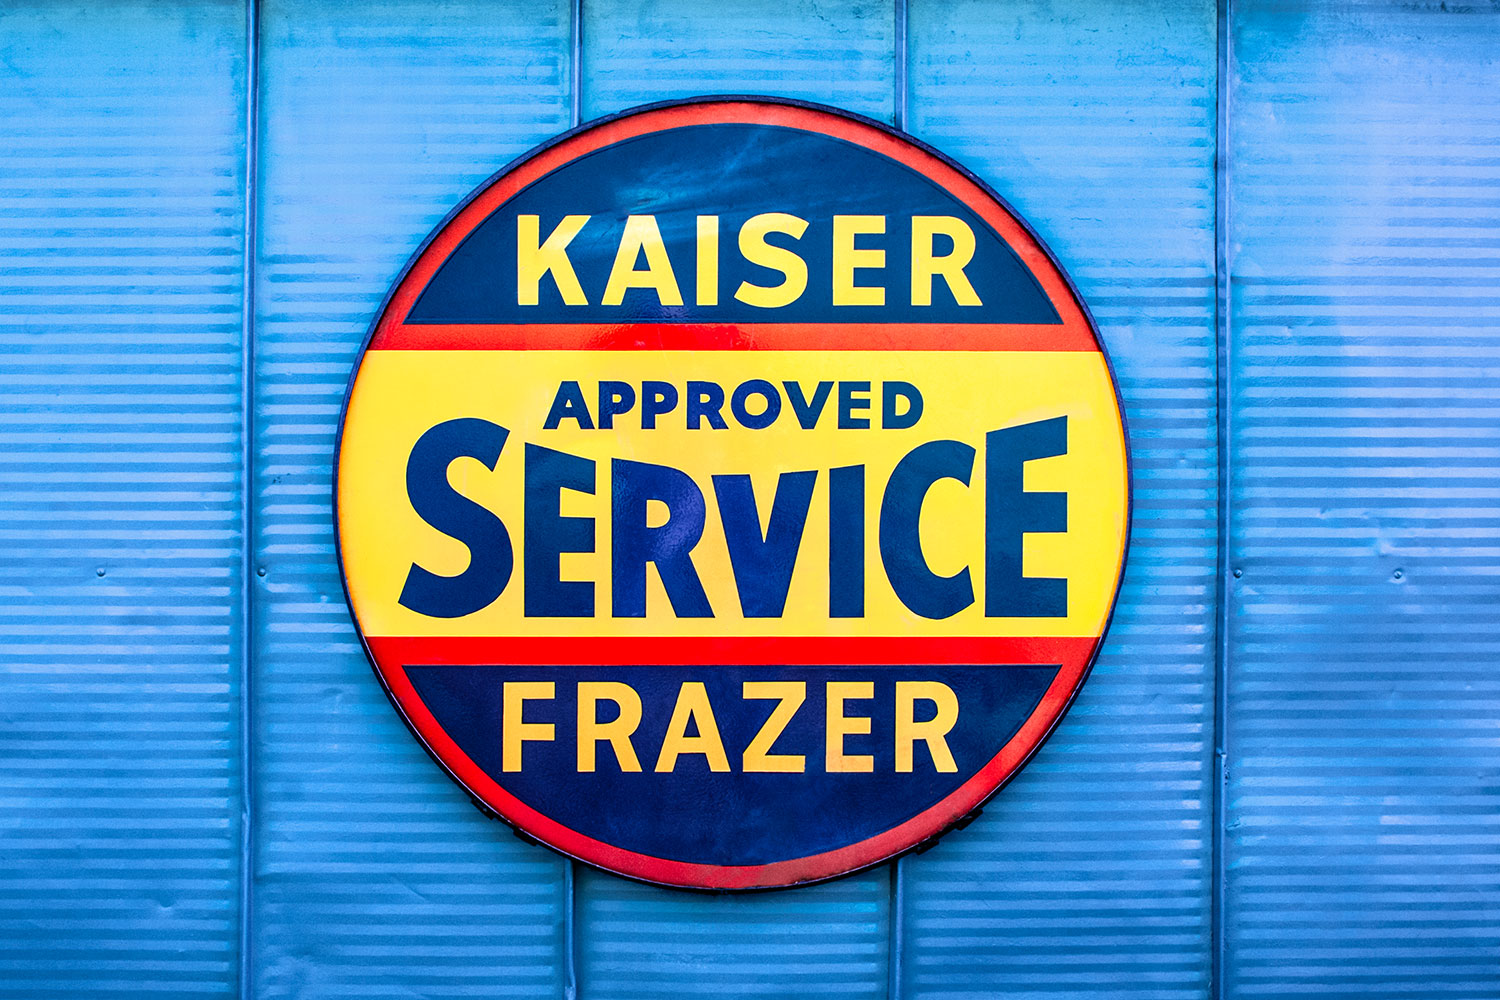 Kaiser Frazer Approved Service